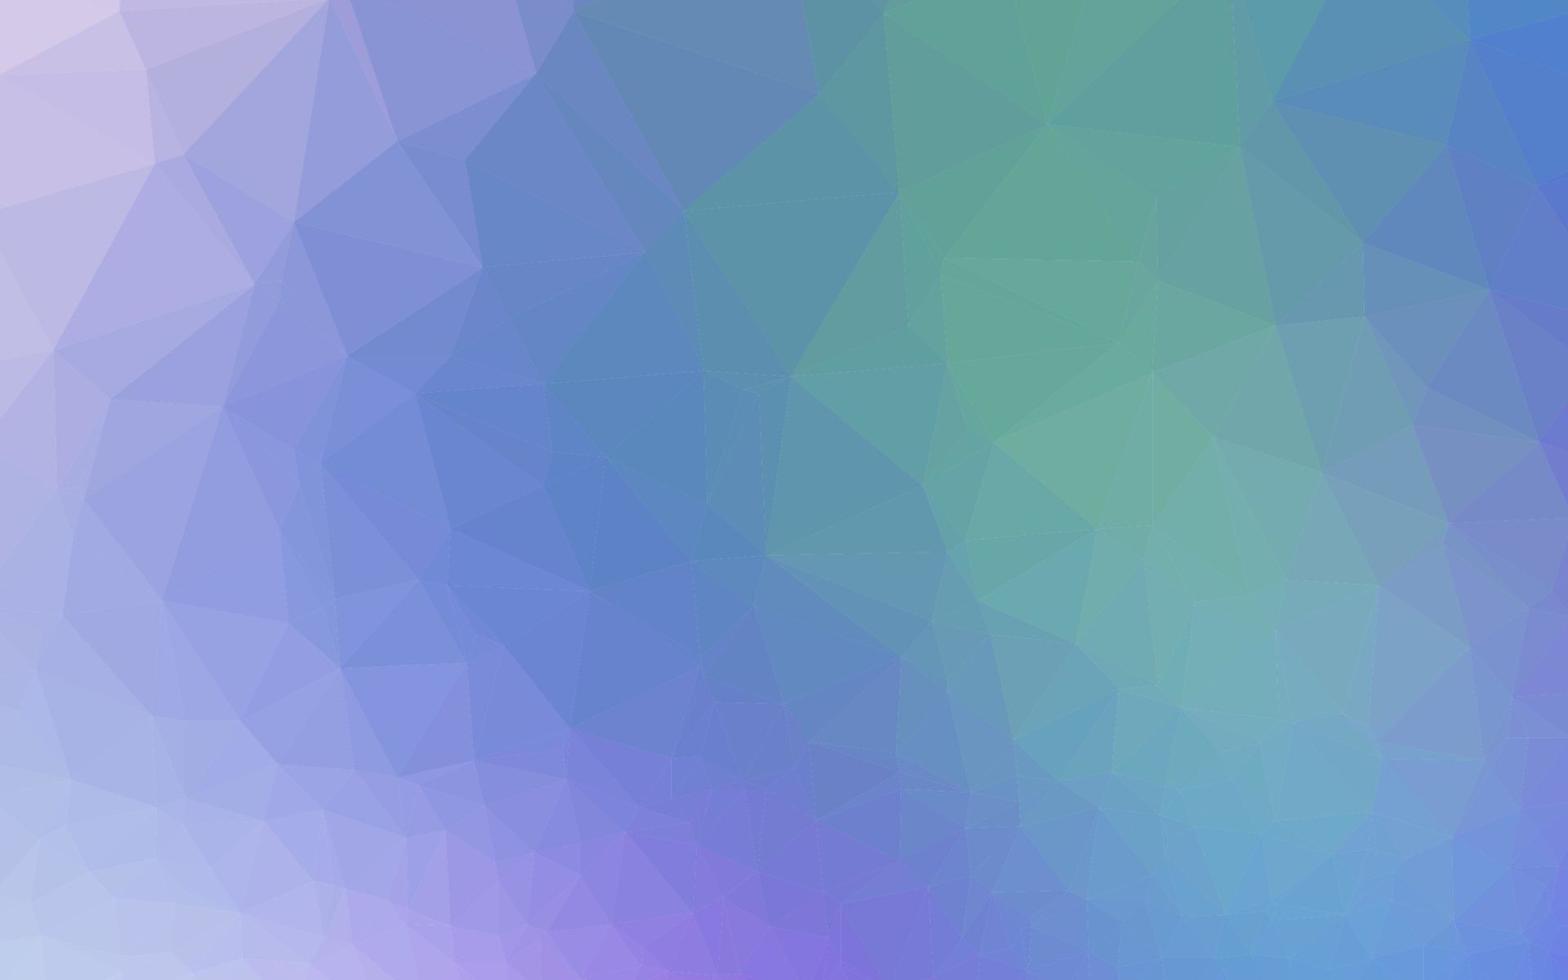 luz multicolor, diseño poligonal abstracto del vector del arco iris.